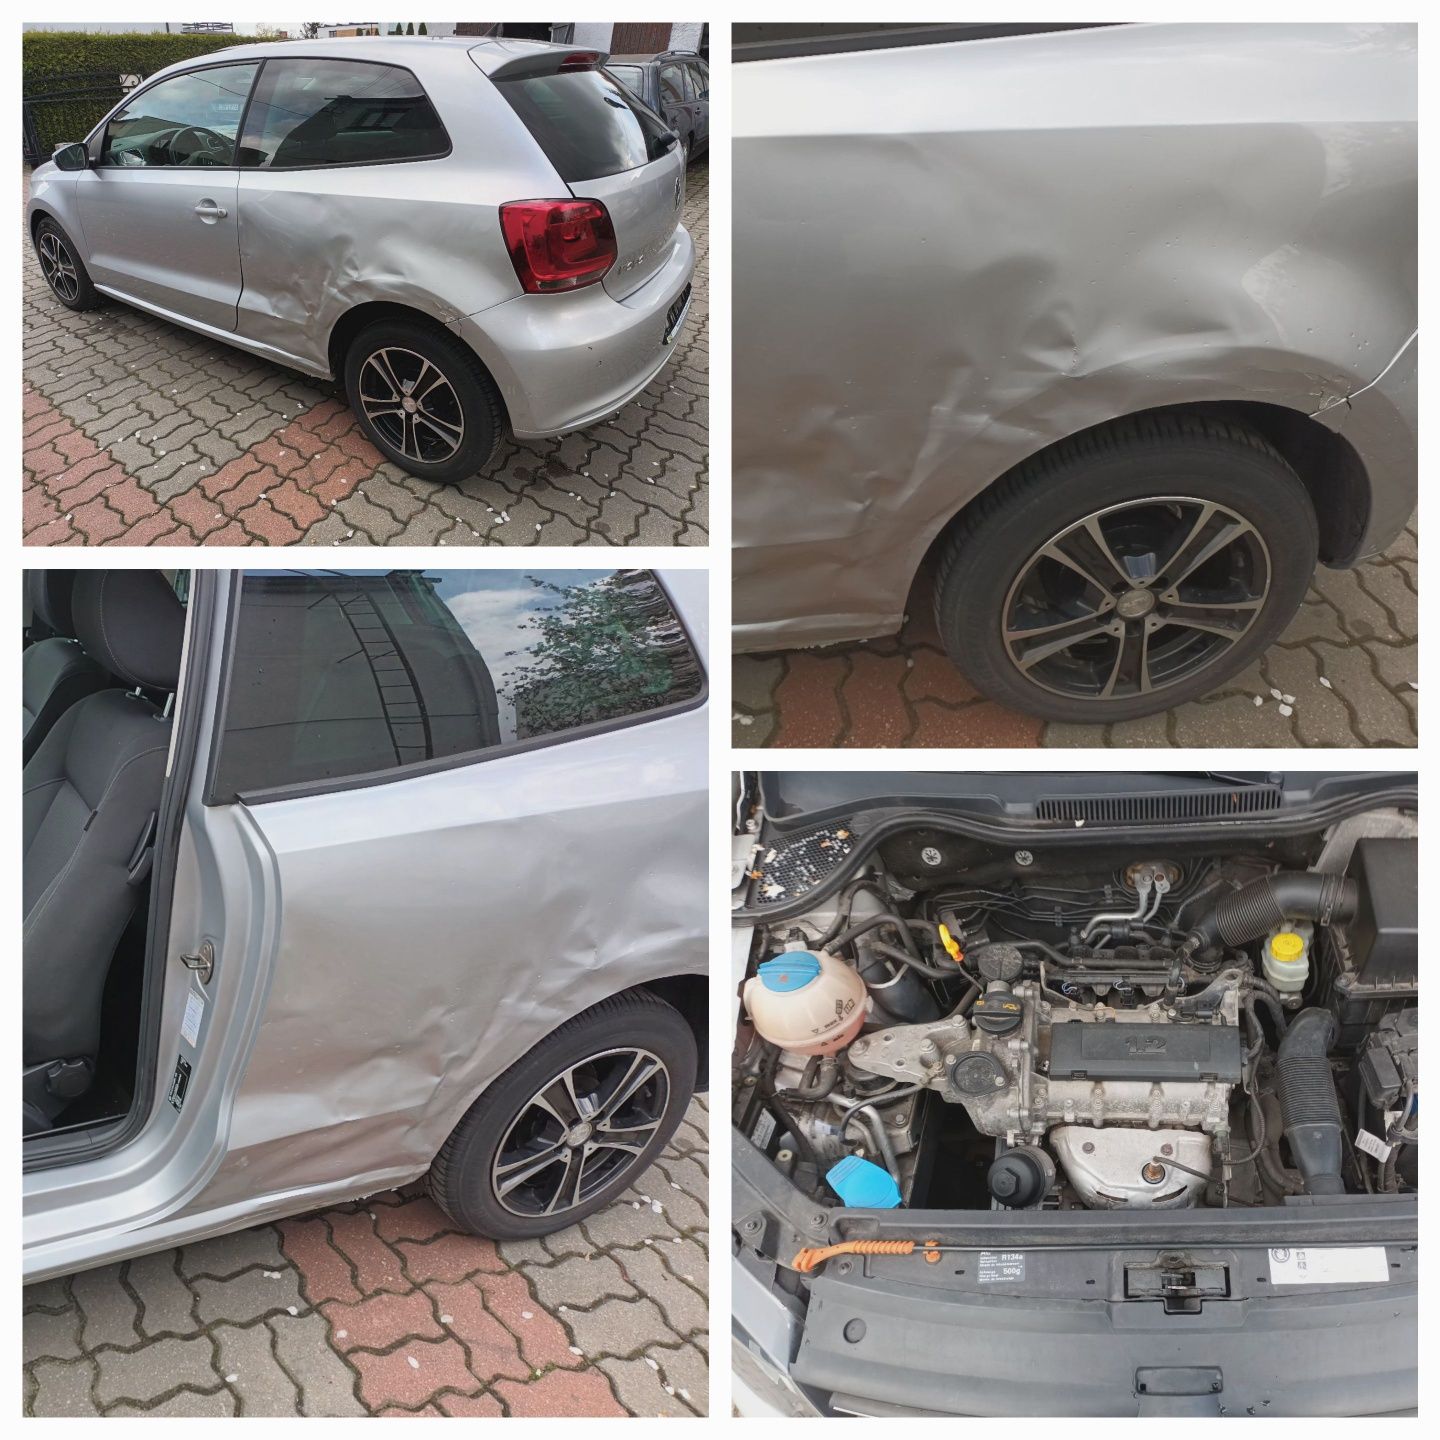 VW Polo 6r 1.2 111tys km ks serwisowa lekko uszkodzony